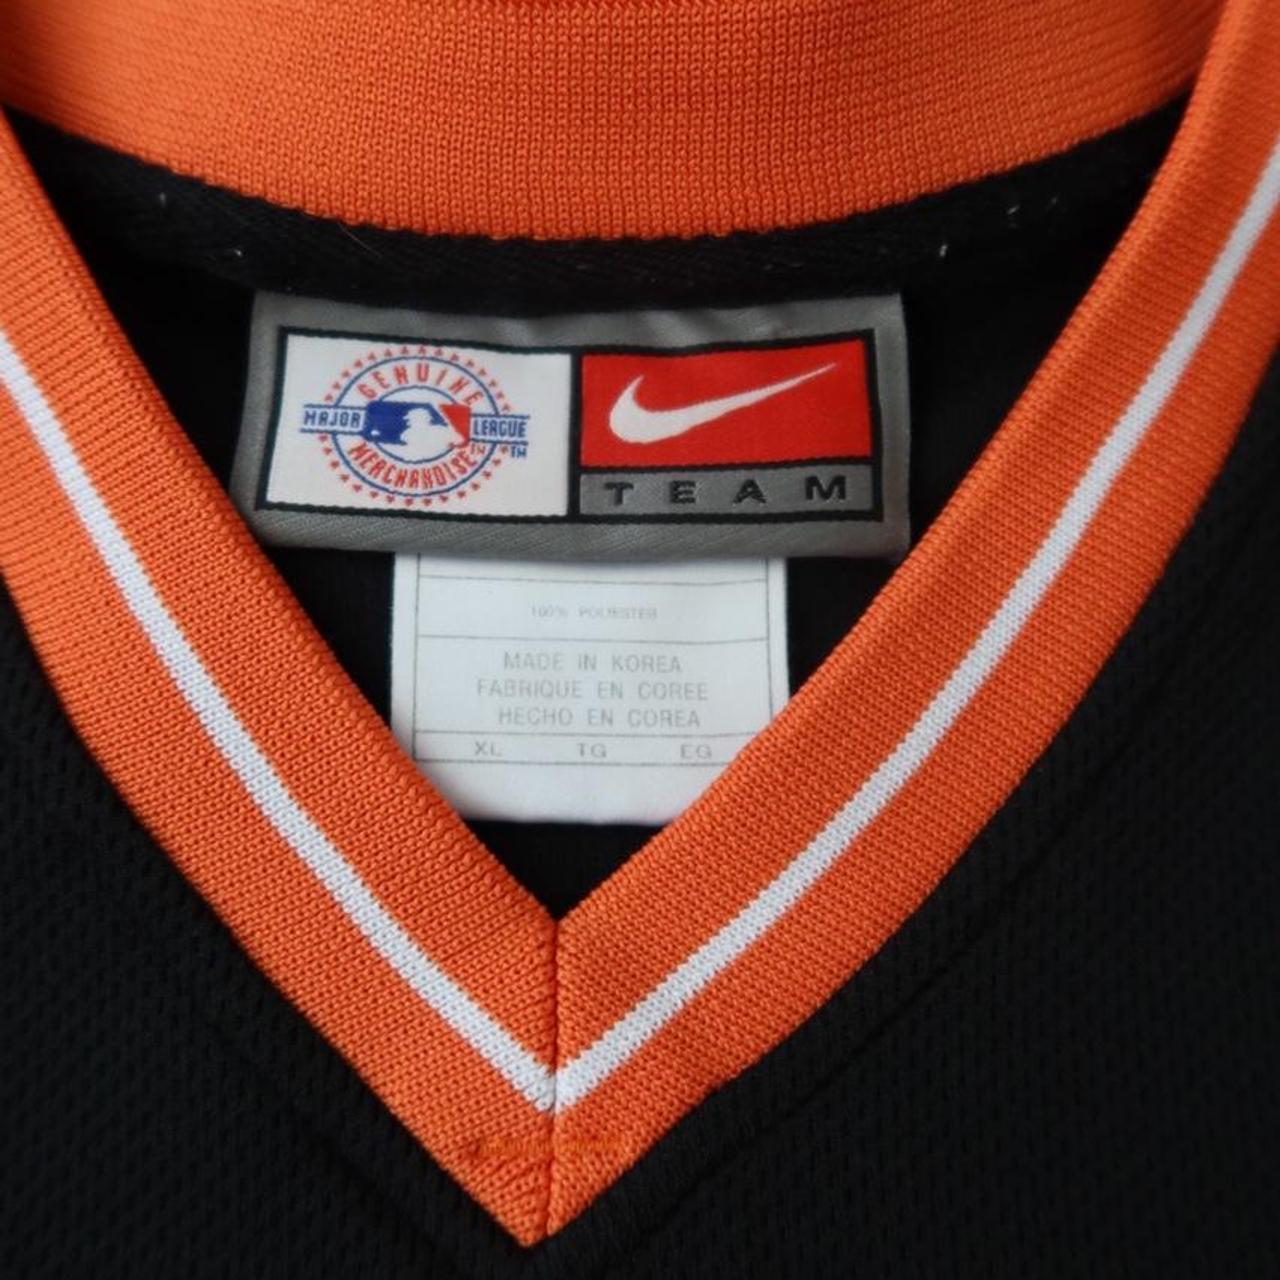 Black Orioles Nike Jersey w/ Orange & White - Depop